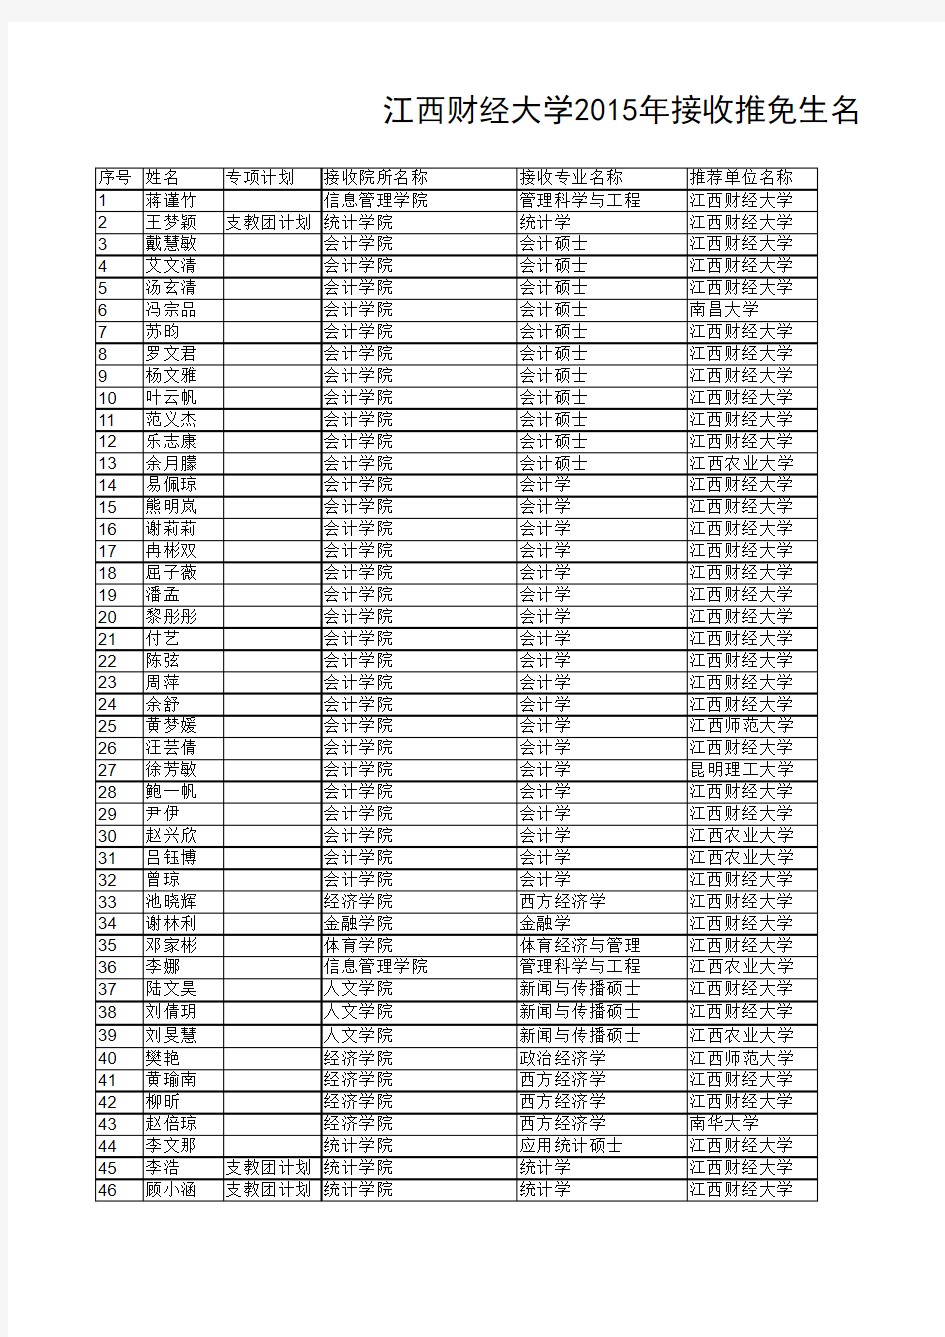 江西财经大学2015年接收推免生名单公示xls